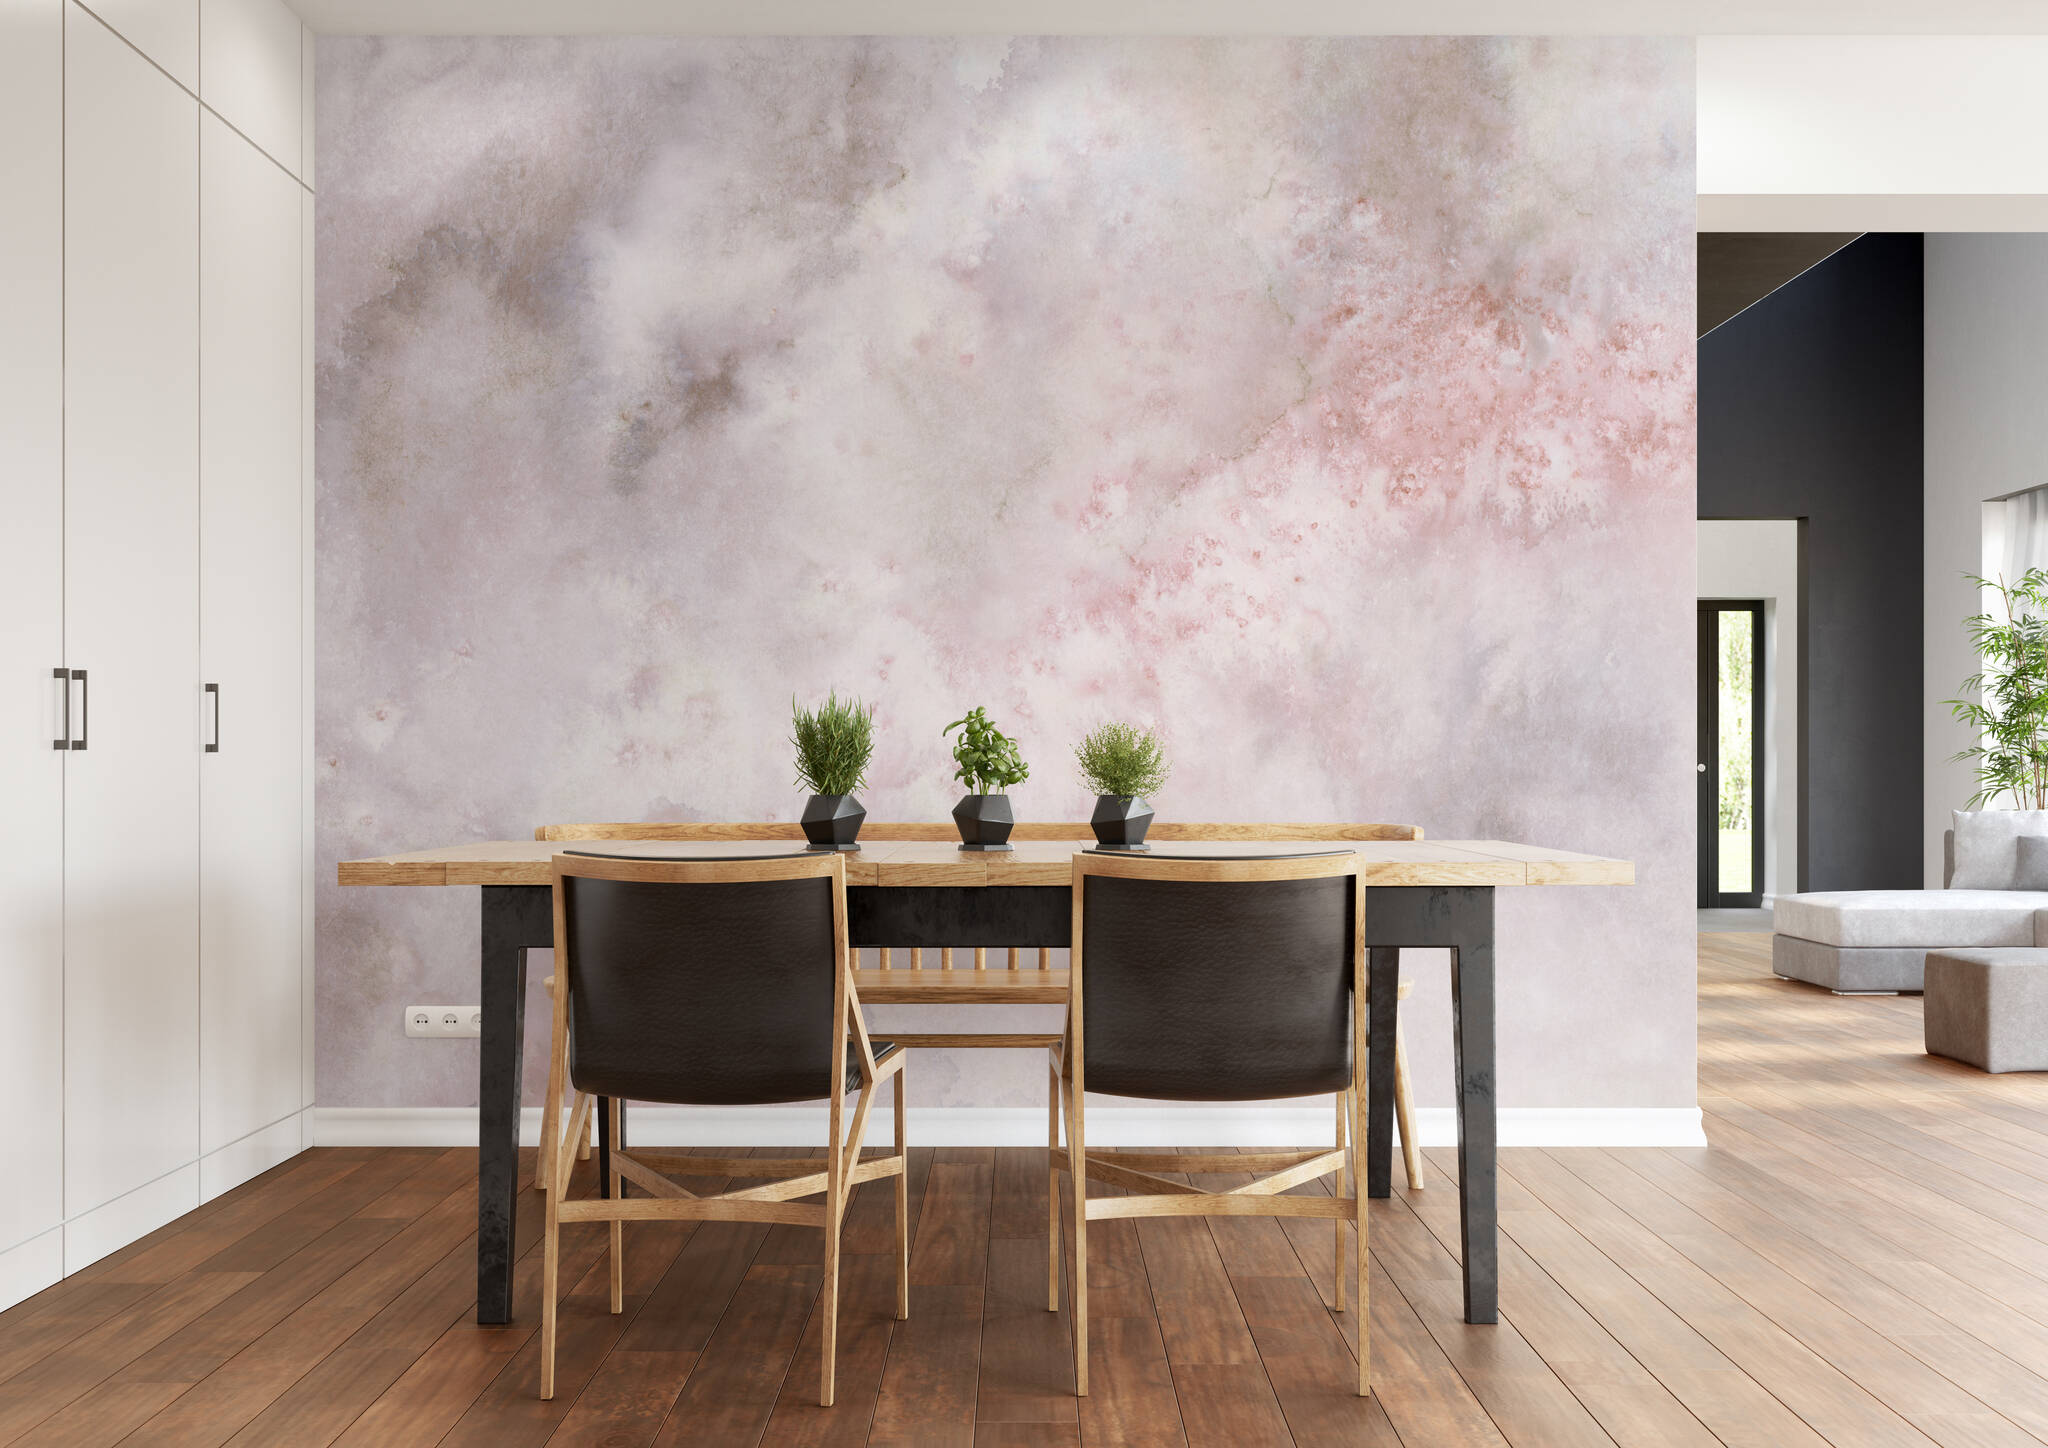 Esszimmer mit Wandbild - Wolkiges Aquarell in grau, rosé und weiß mit spannenden Farbverläufen 